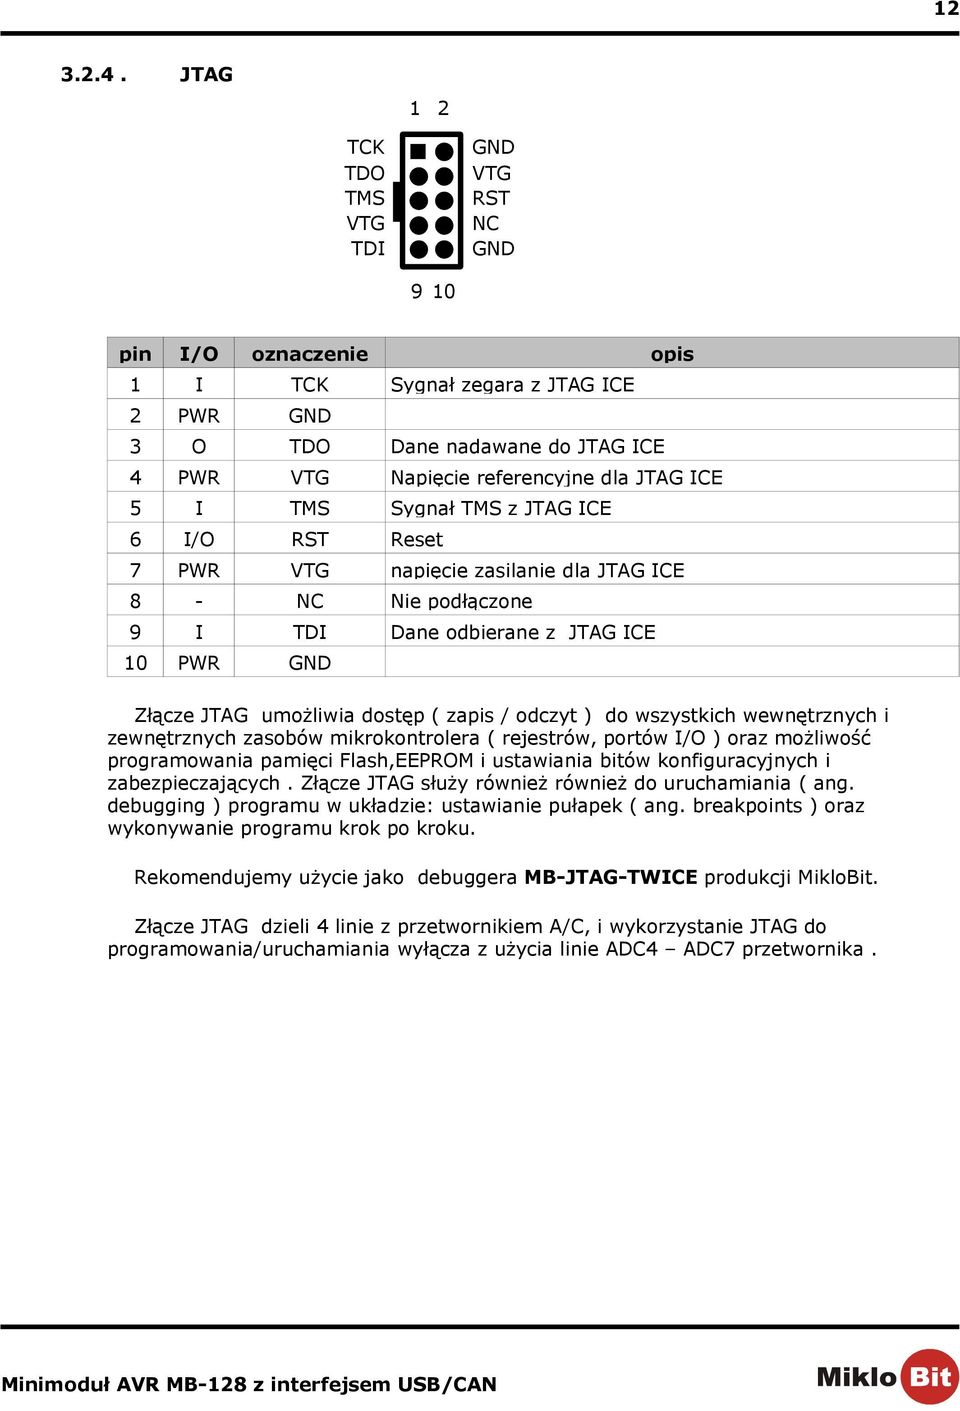 6 RST Reset 7 PWR VTG napięcie zasilanie dla JTAG ICE 8 - NC Nie podłączone 9 I TDI Dane odbierane z JTAG ICE 10 PWR GND Sygnał zegara z JTAG ICE Złącze JTAG umożliwia dostęp ( zapis / odczyt ) do